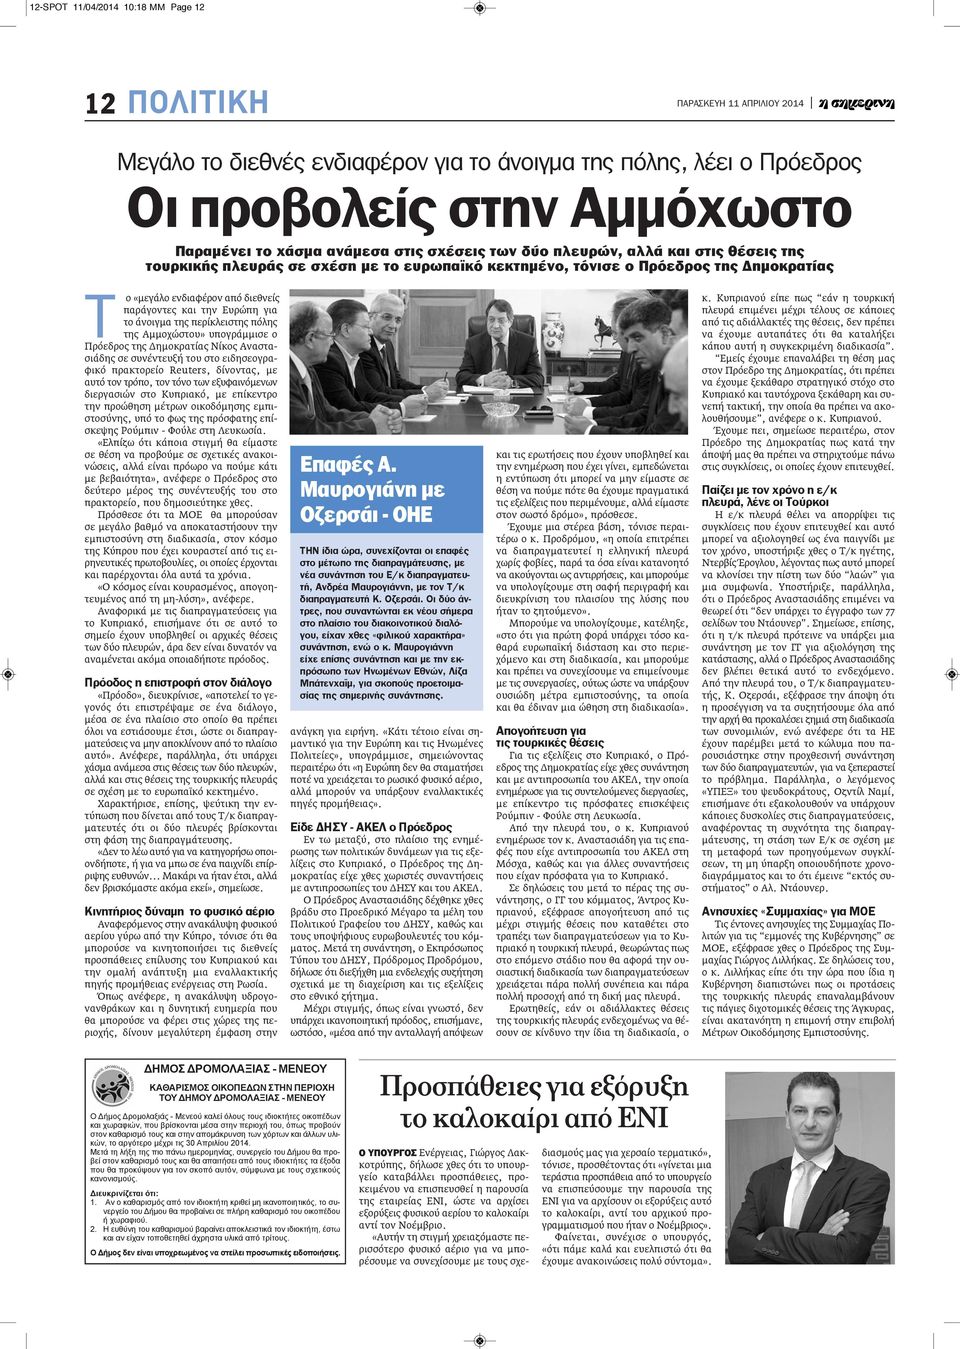 της περίκλειστης πόλης της Αμμοχώστου» υπογράμμισε ο Πρόεδρος της Δημοκρατίας Νίκος Αναστασιάδης σε συνέντευξή του στο ειδησεογραφικό πρακτορείο Reuters, δίνοντας, με αυτό τον τρόπο, τον τόνο των